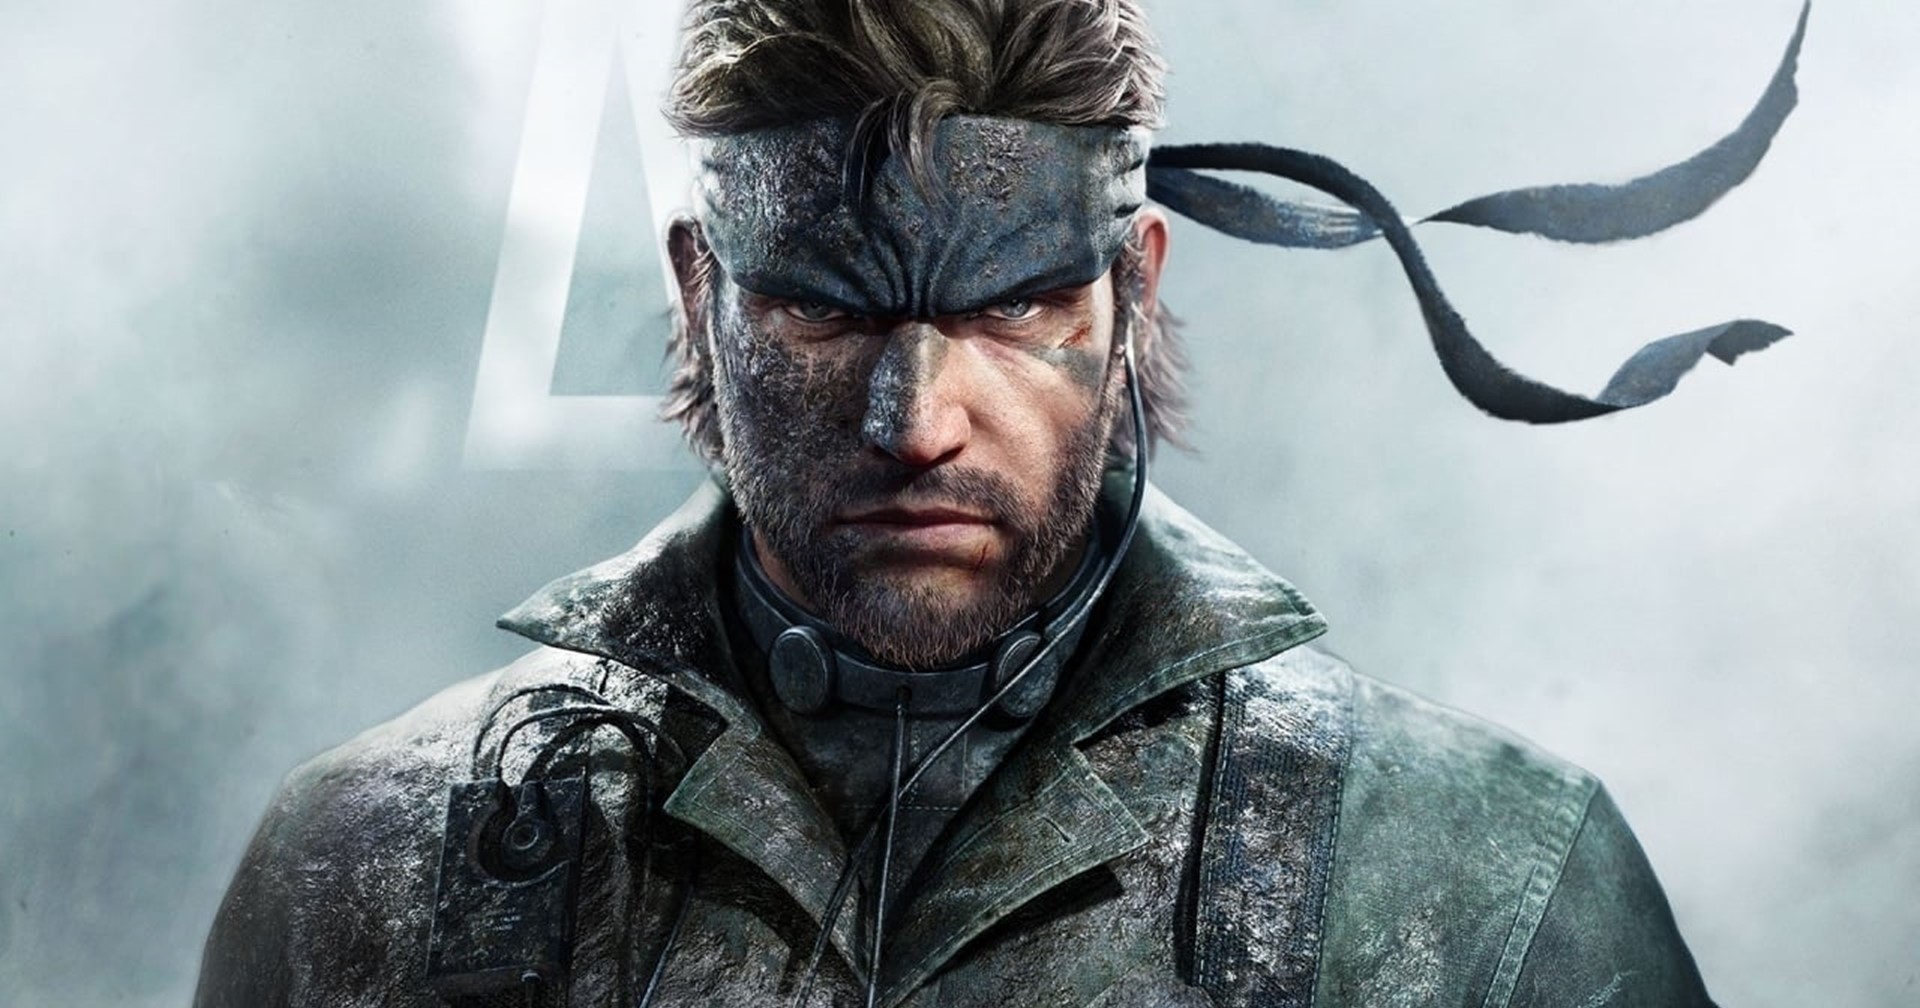 เกม Metal Gear Solid Delta: Snake Eater จะถูกยกระดับขึ้น แต่ยังรักษาความคลาสิกไว้